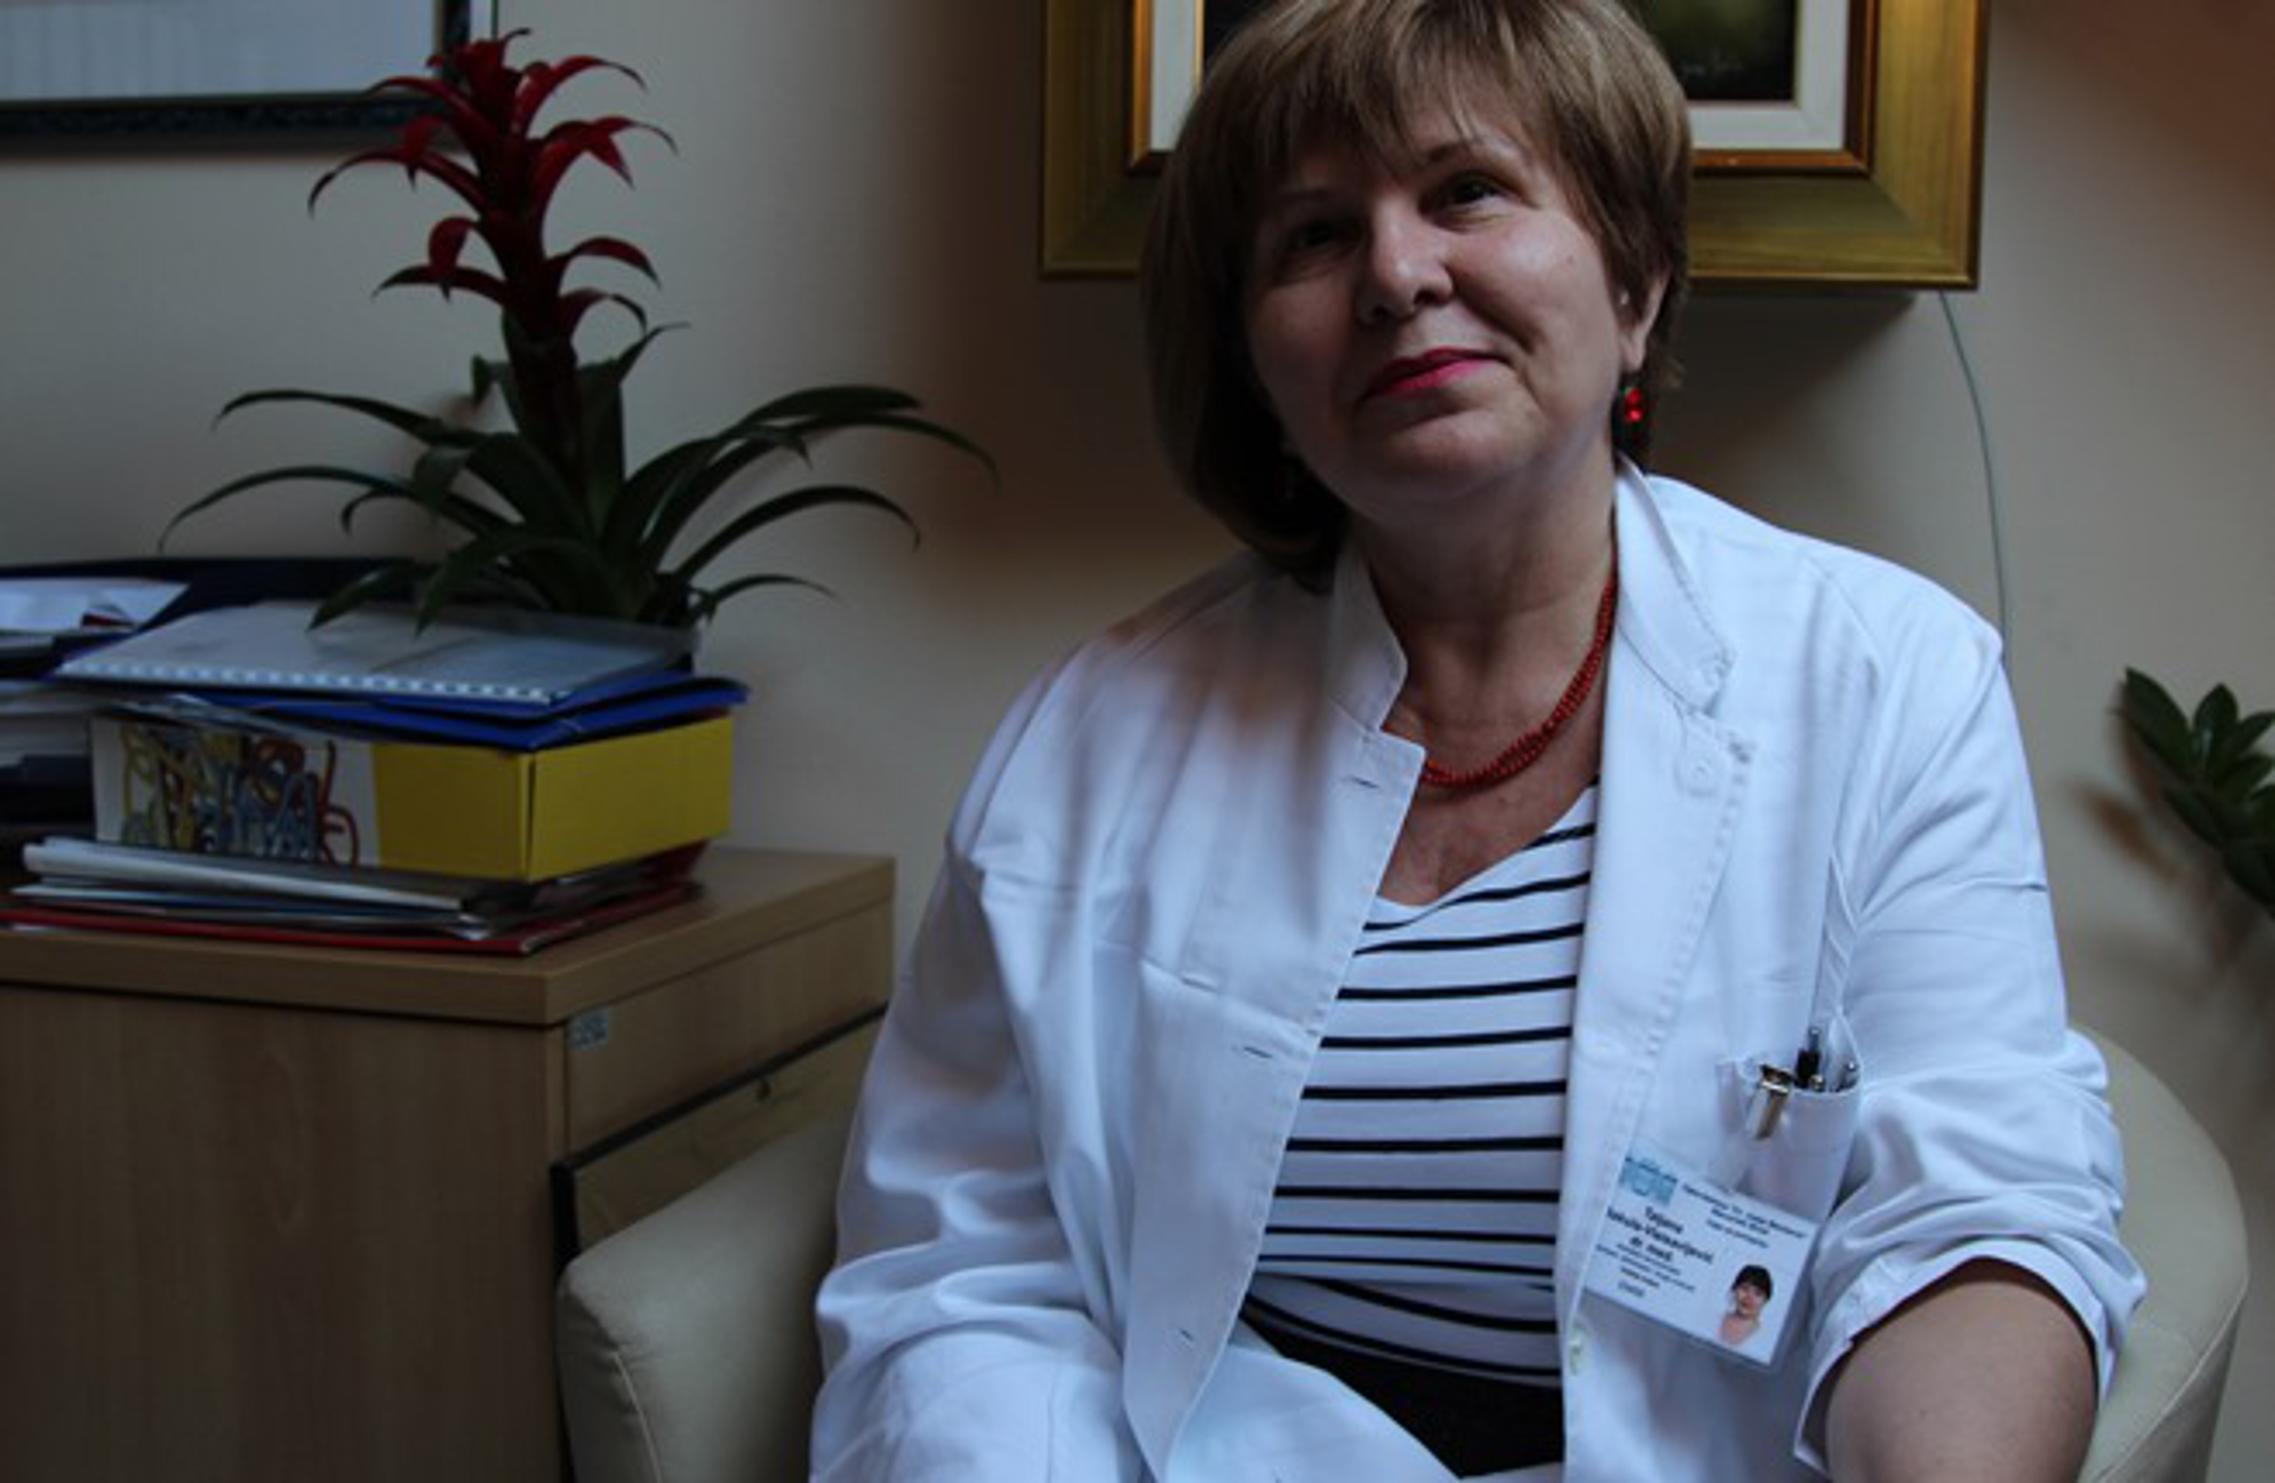 specijalist neuropsihijatrije, Tatjana Bakula-Vlaisavljević, dr.med.